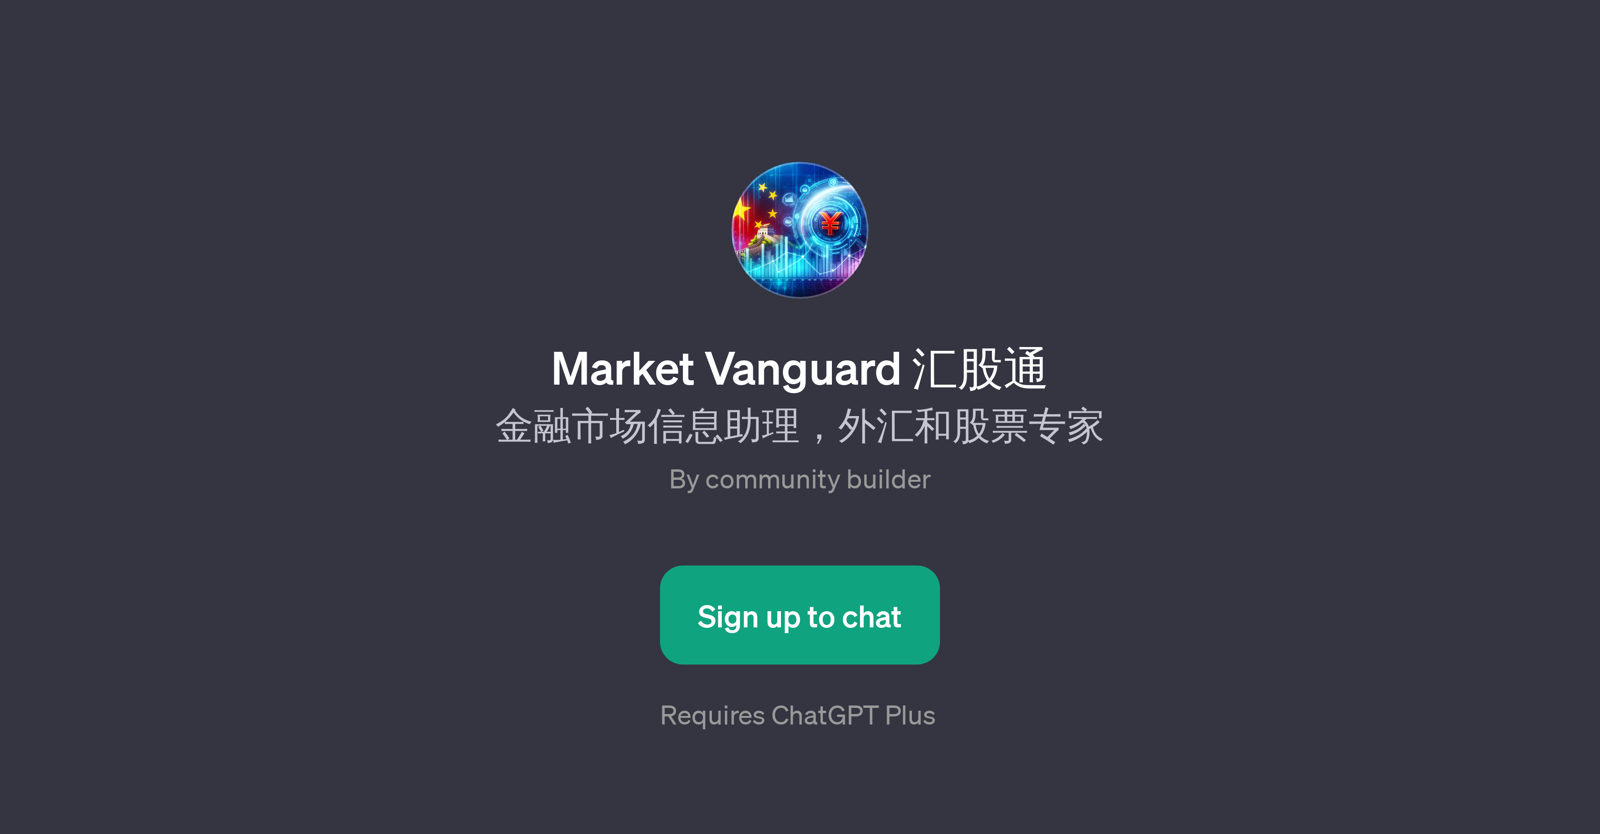 Market Vanguard website